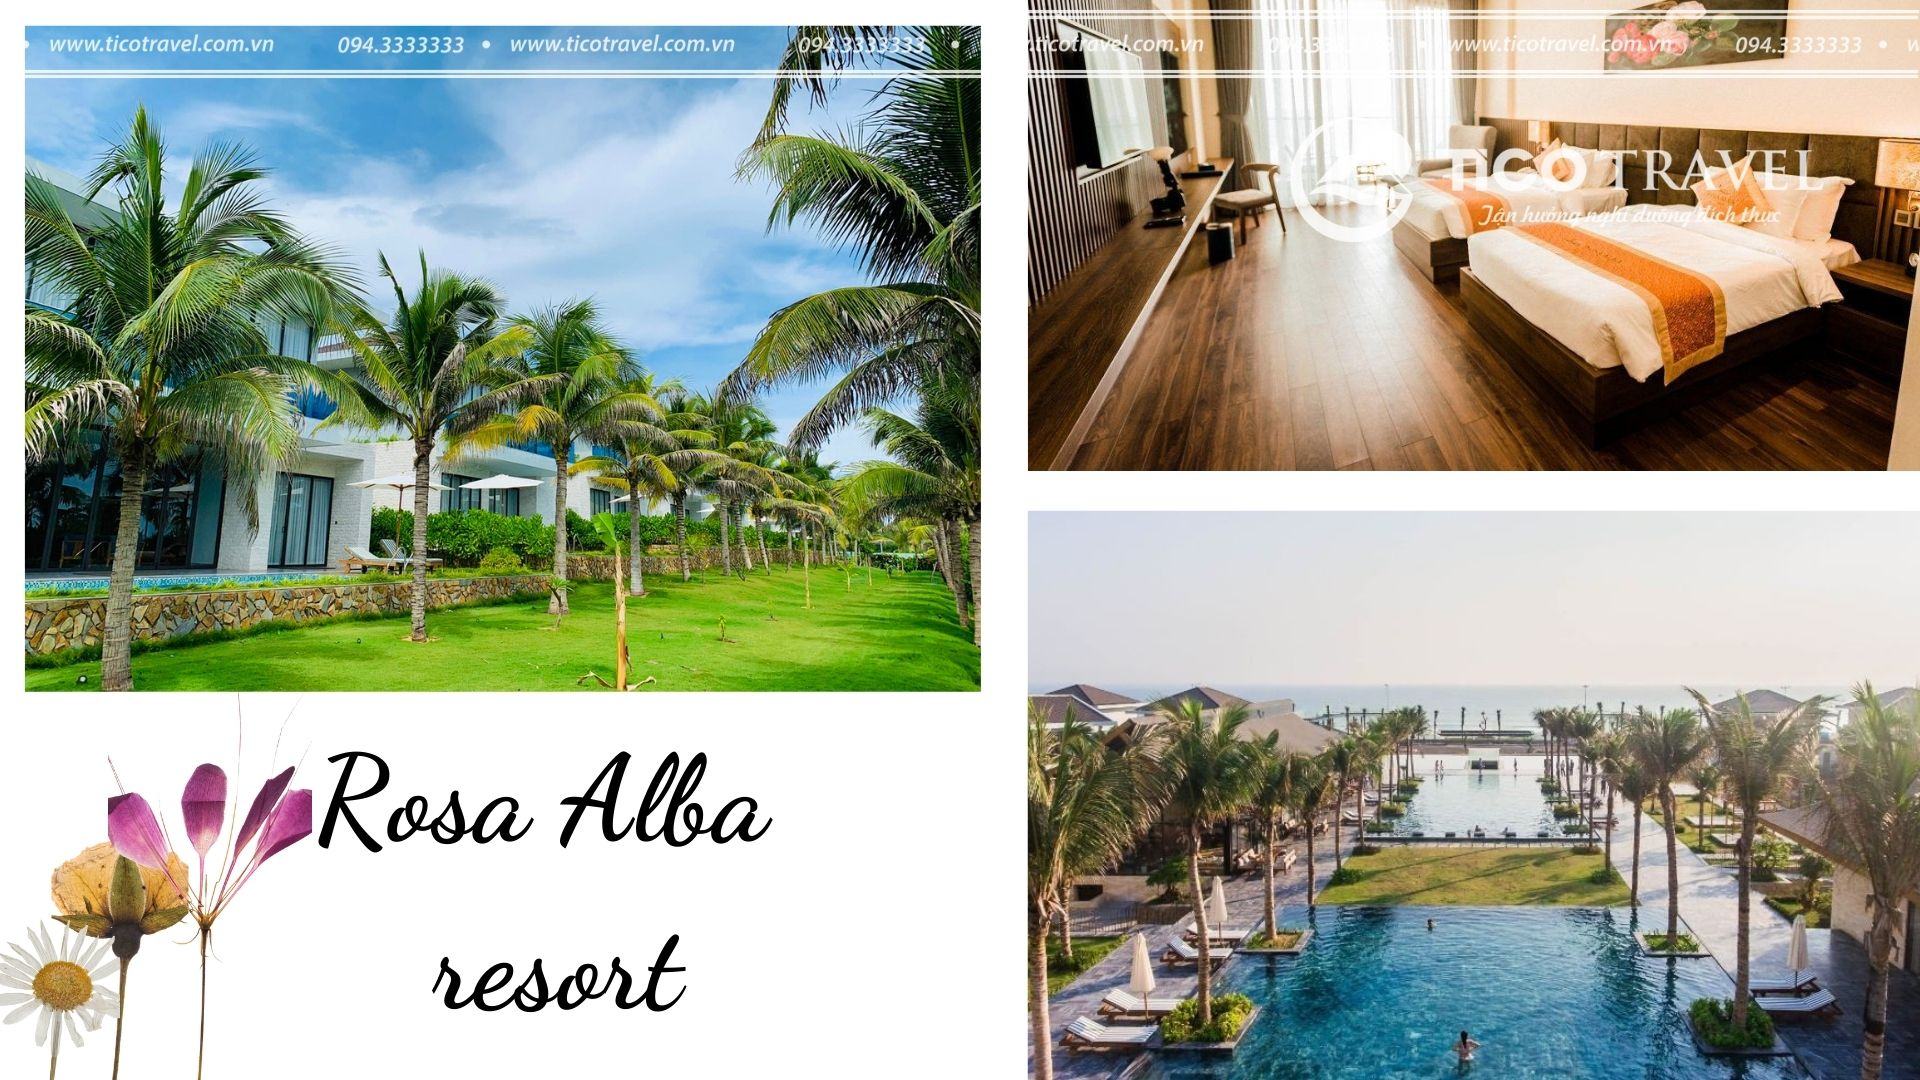 ảnh chụp Rosa Alba Resort Phú Yên